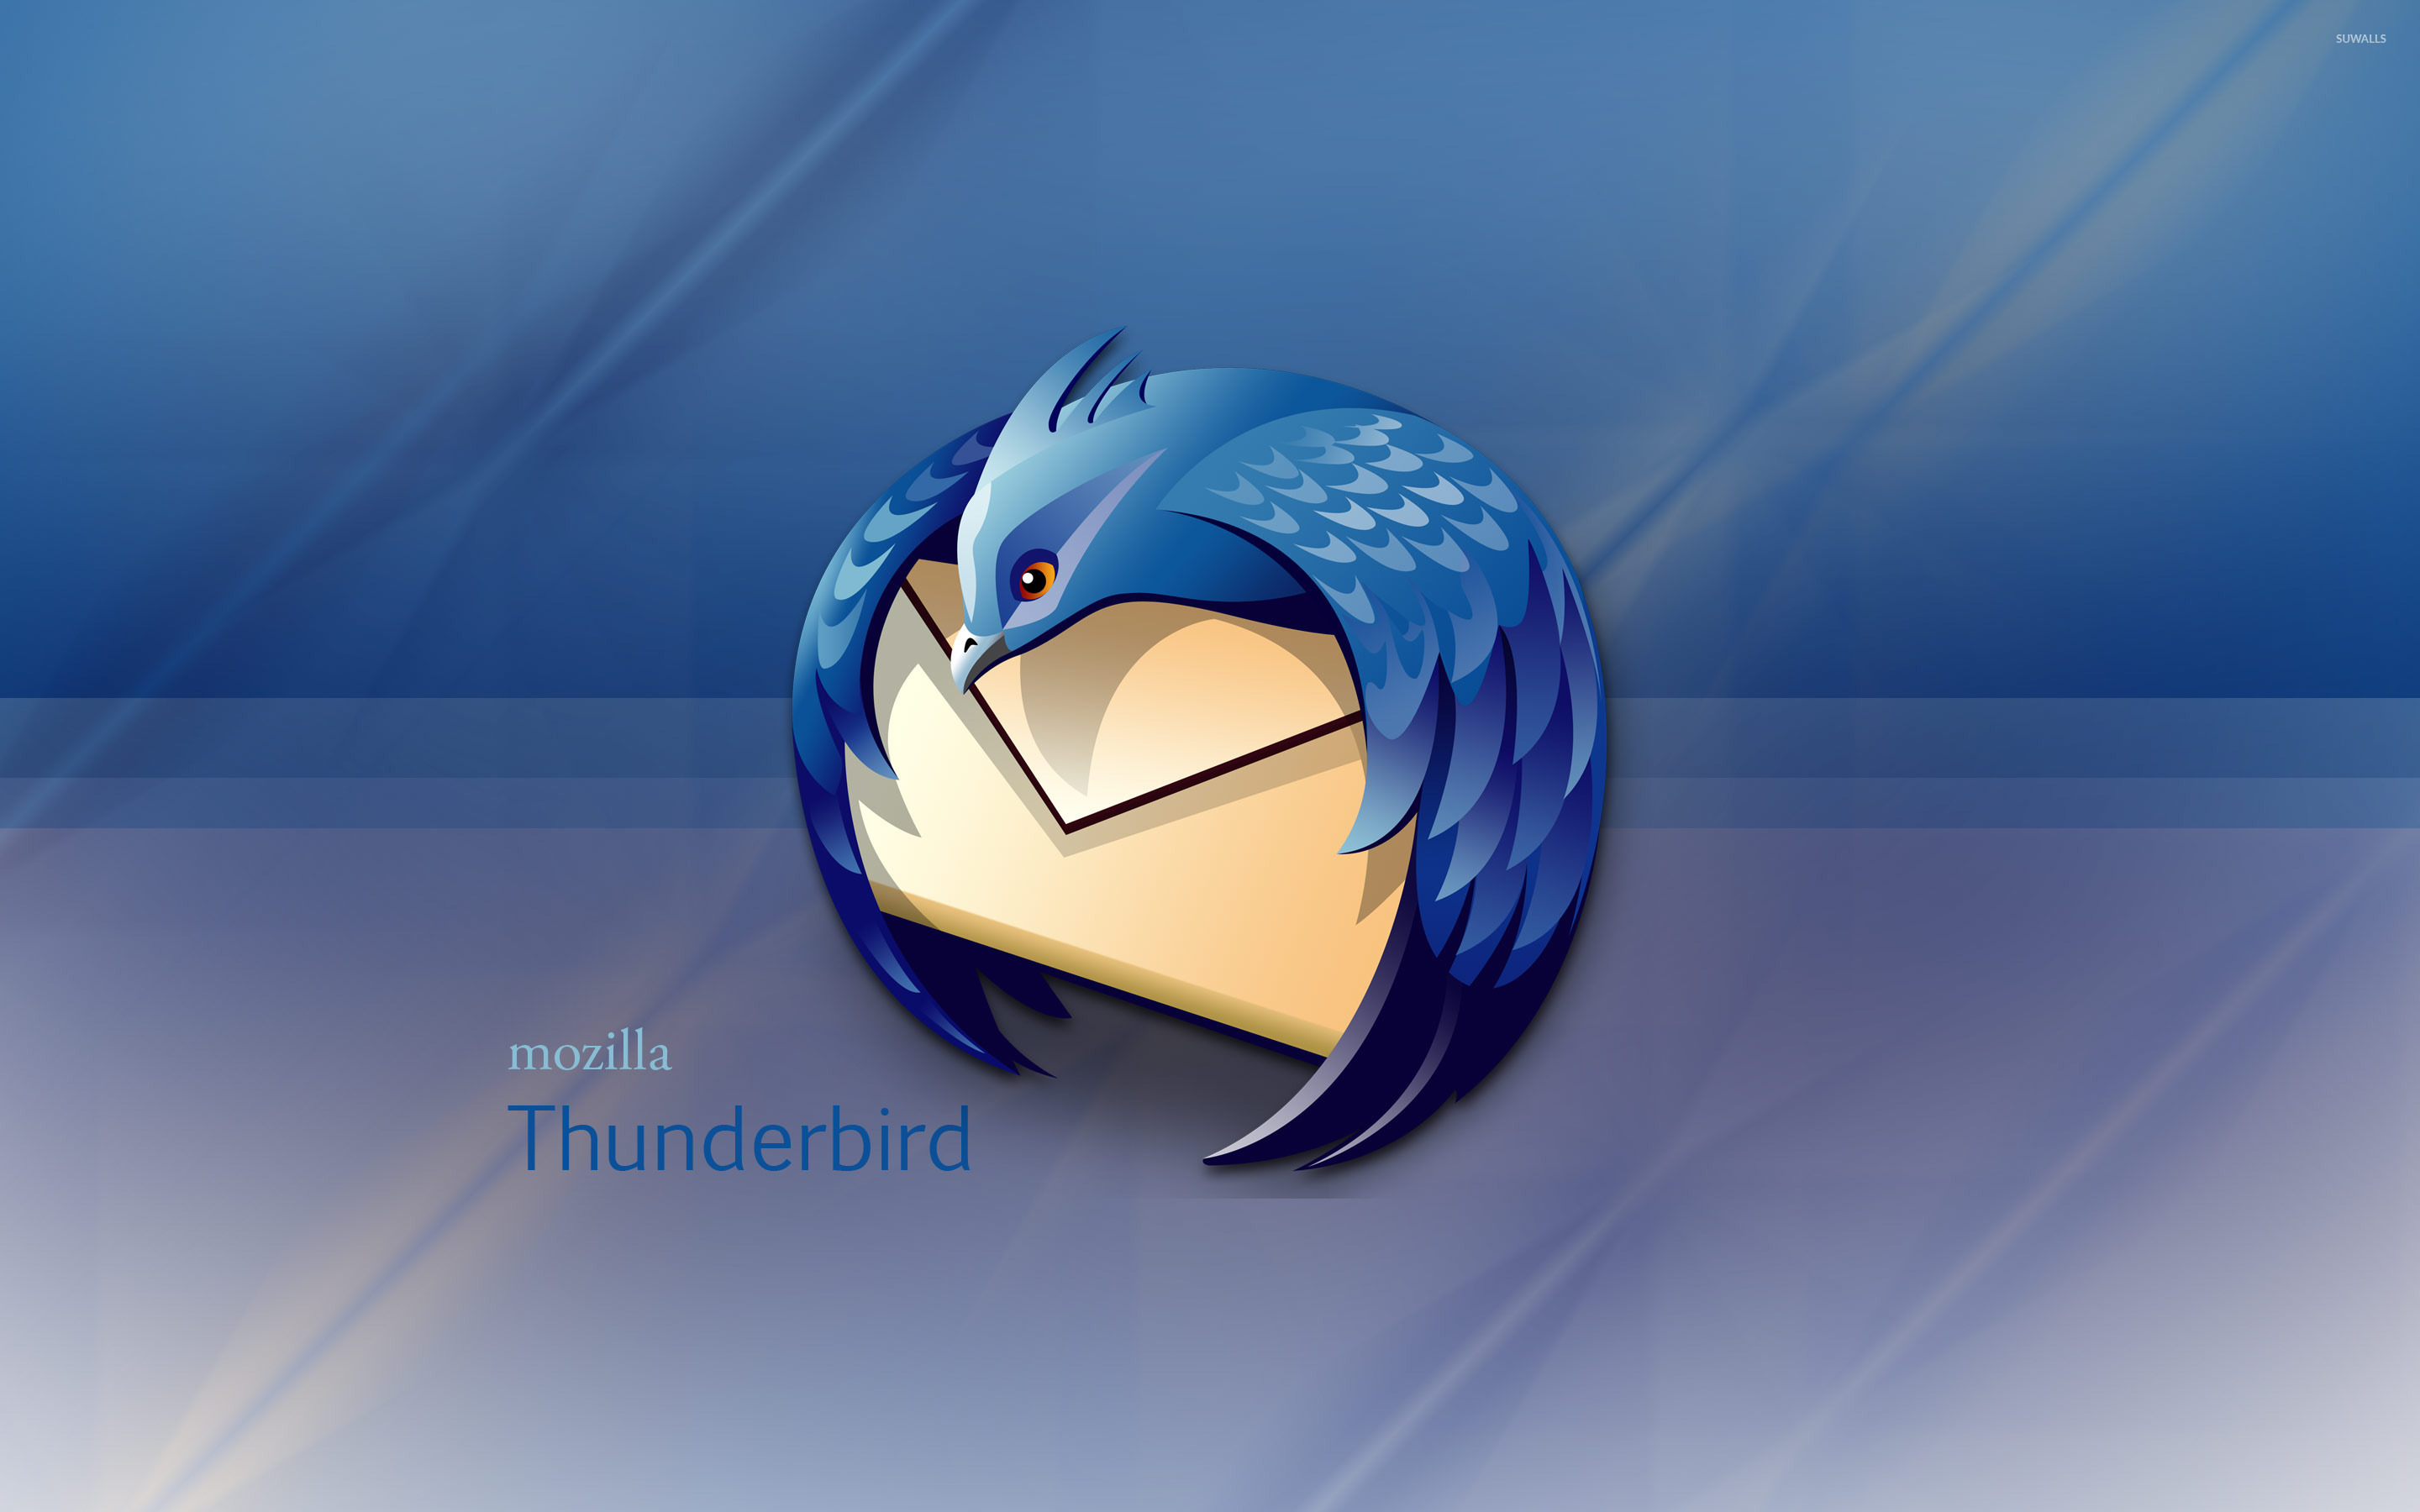 Mozilla Thunderbird Wallpaper Puter